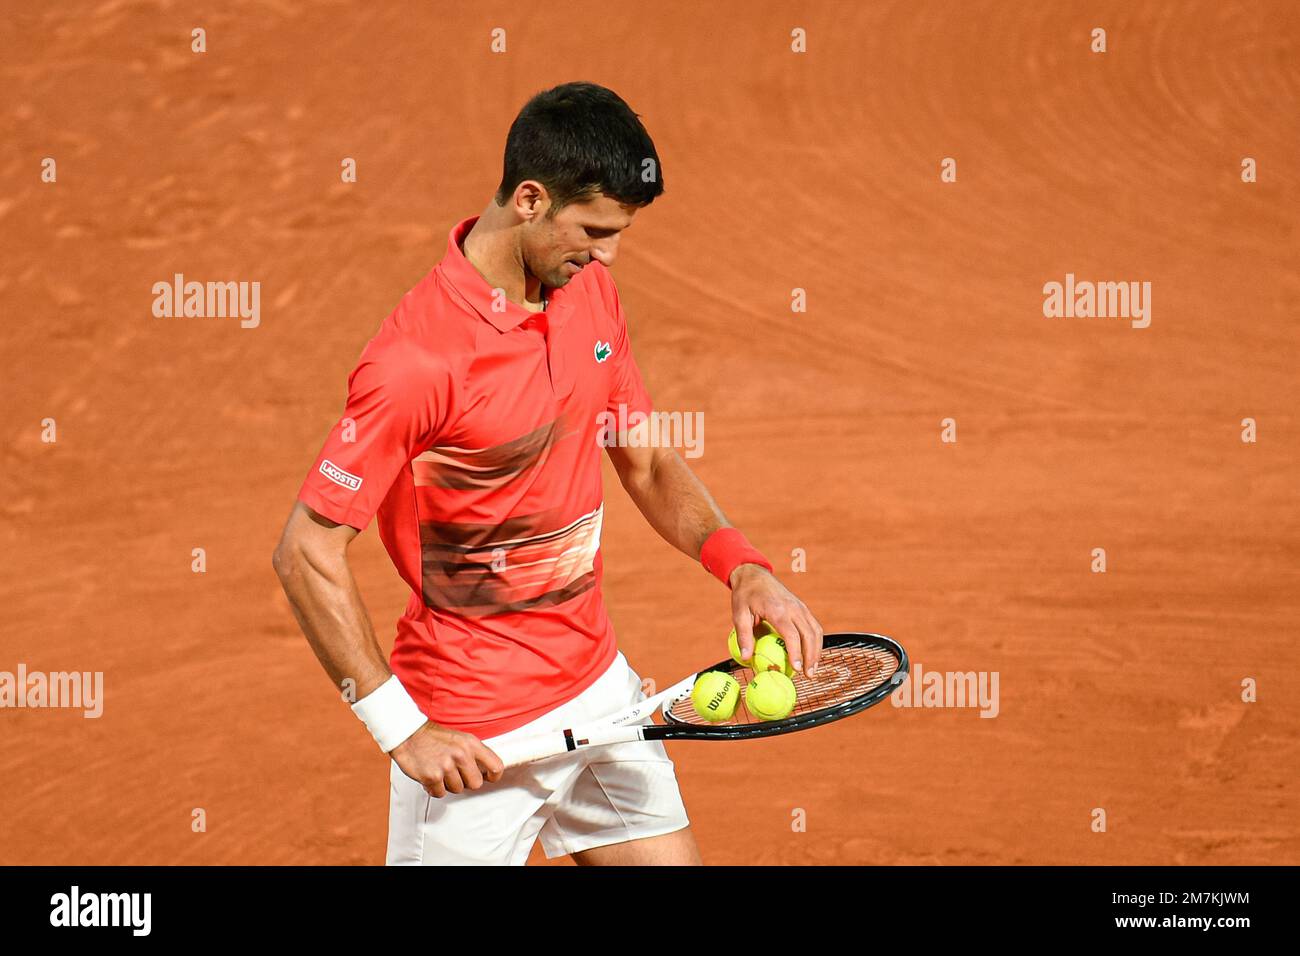 Novak Djokovic durante la semifinal del Abierto de Francia contra Rafael Nadal, torneo de tenis de Grand Slam el 31 de mayo de 2022 en el estadio Roland-Garros de París, Foto de stock